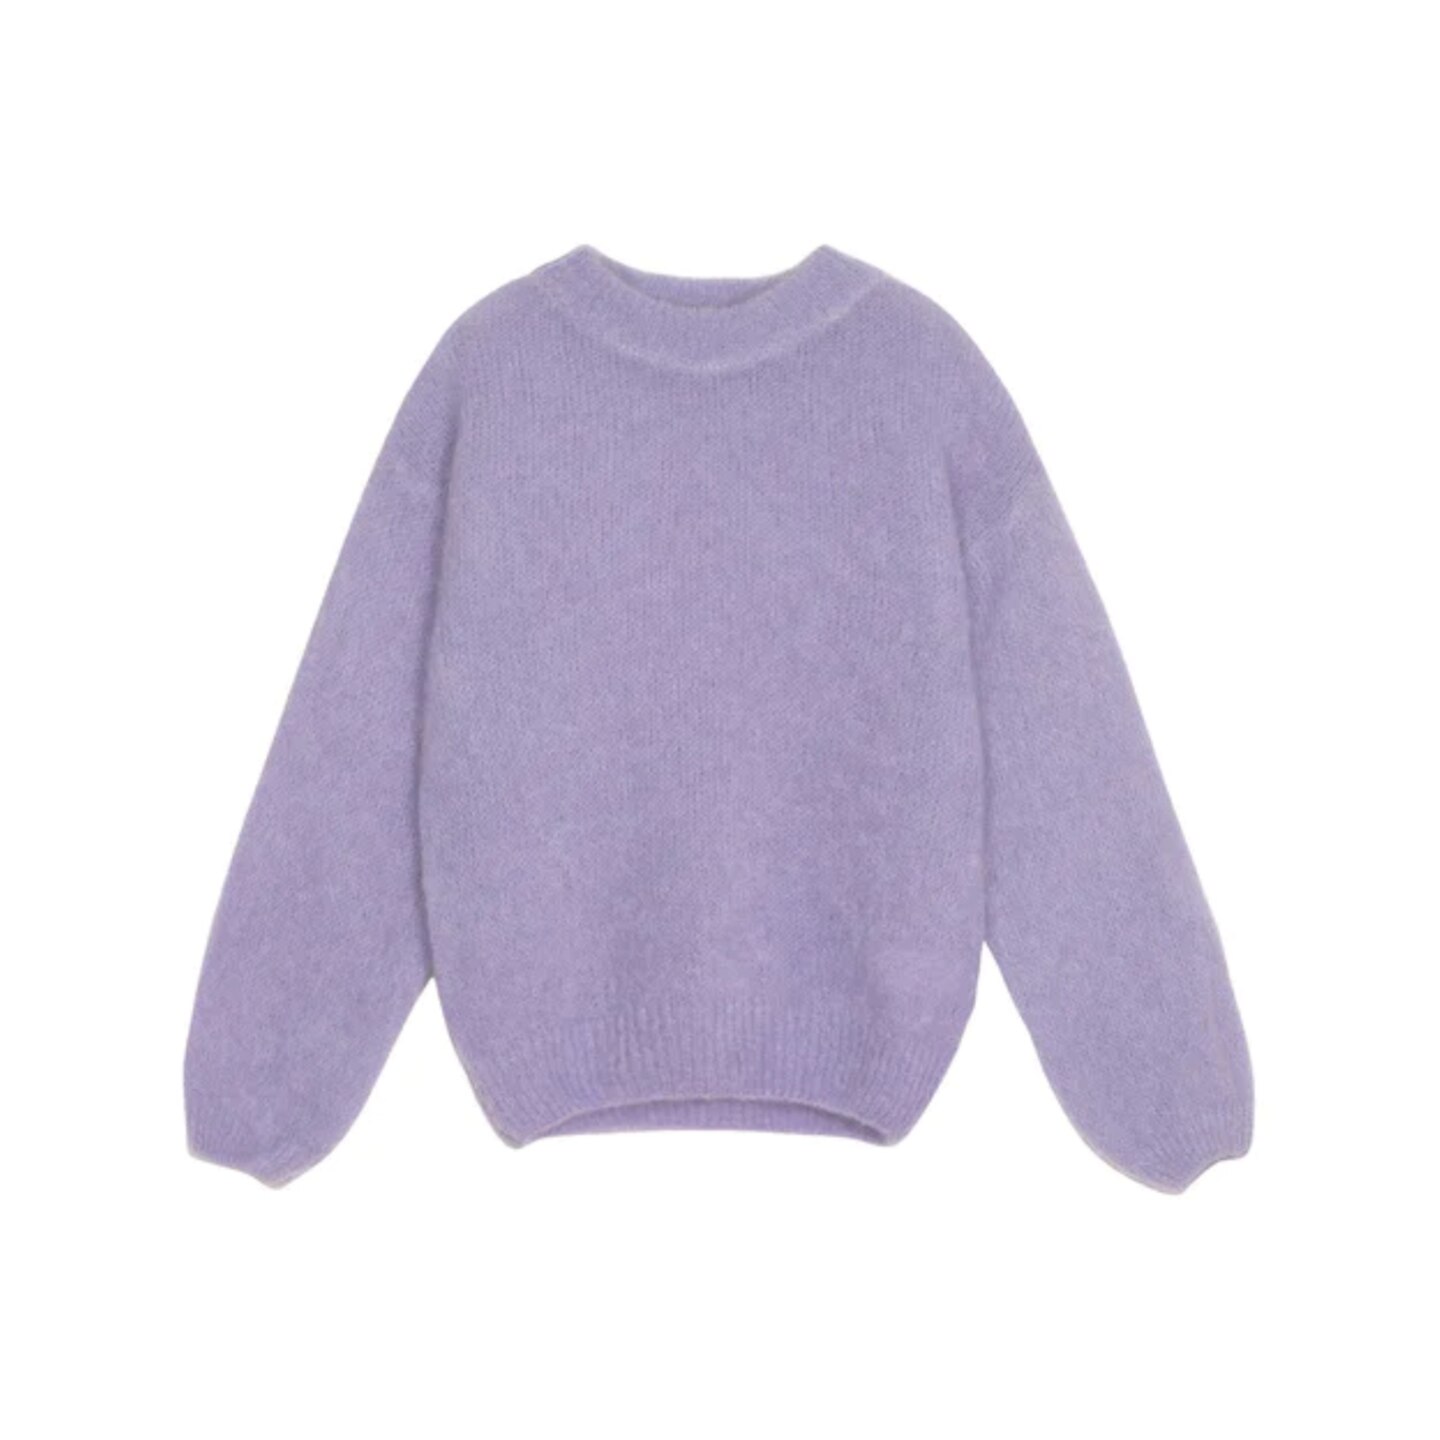 Der lavendelfarbene Pullover "Klea" der Marke Frnch gefällt mir wegen des geriffelten Bunds und Kragens besonders gut. Die Farbe finde ich natürlich auch toll für den Frühling – besonders in Kombination mit Beige und Weiß kann sie strahlen. Um 158 Euro. 